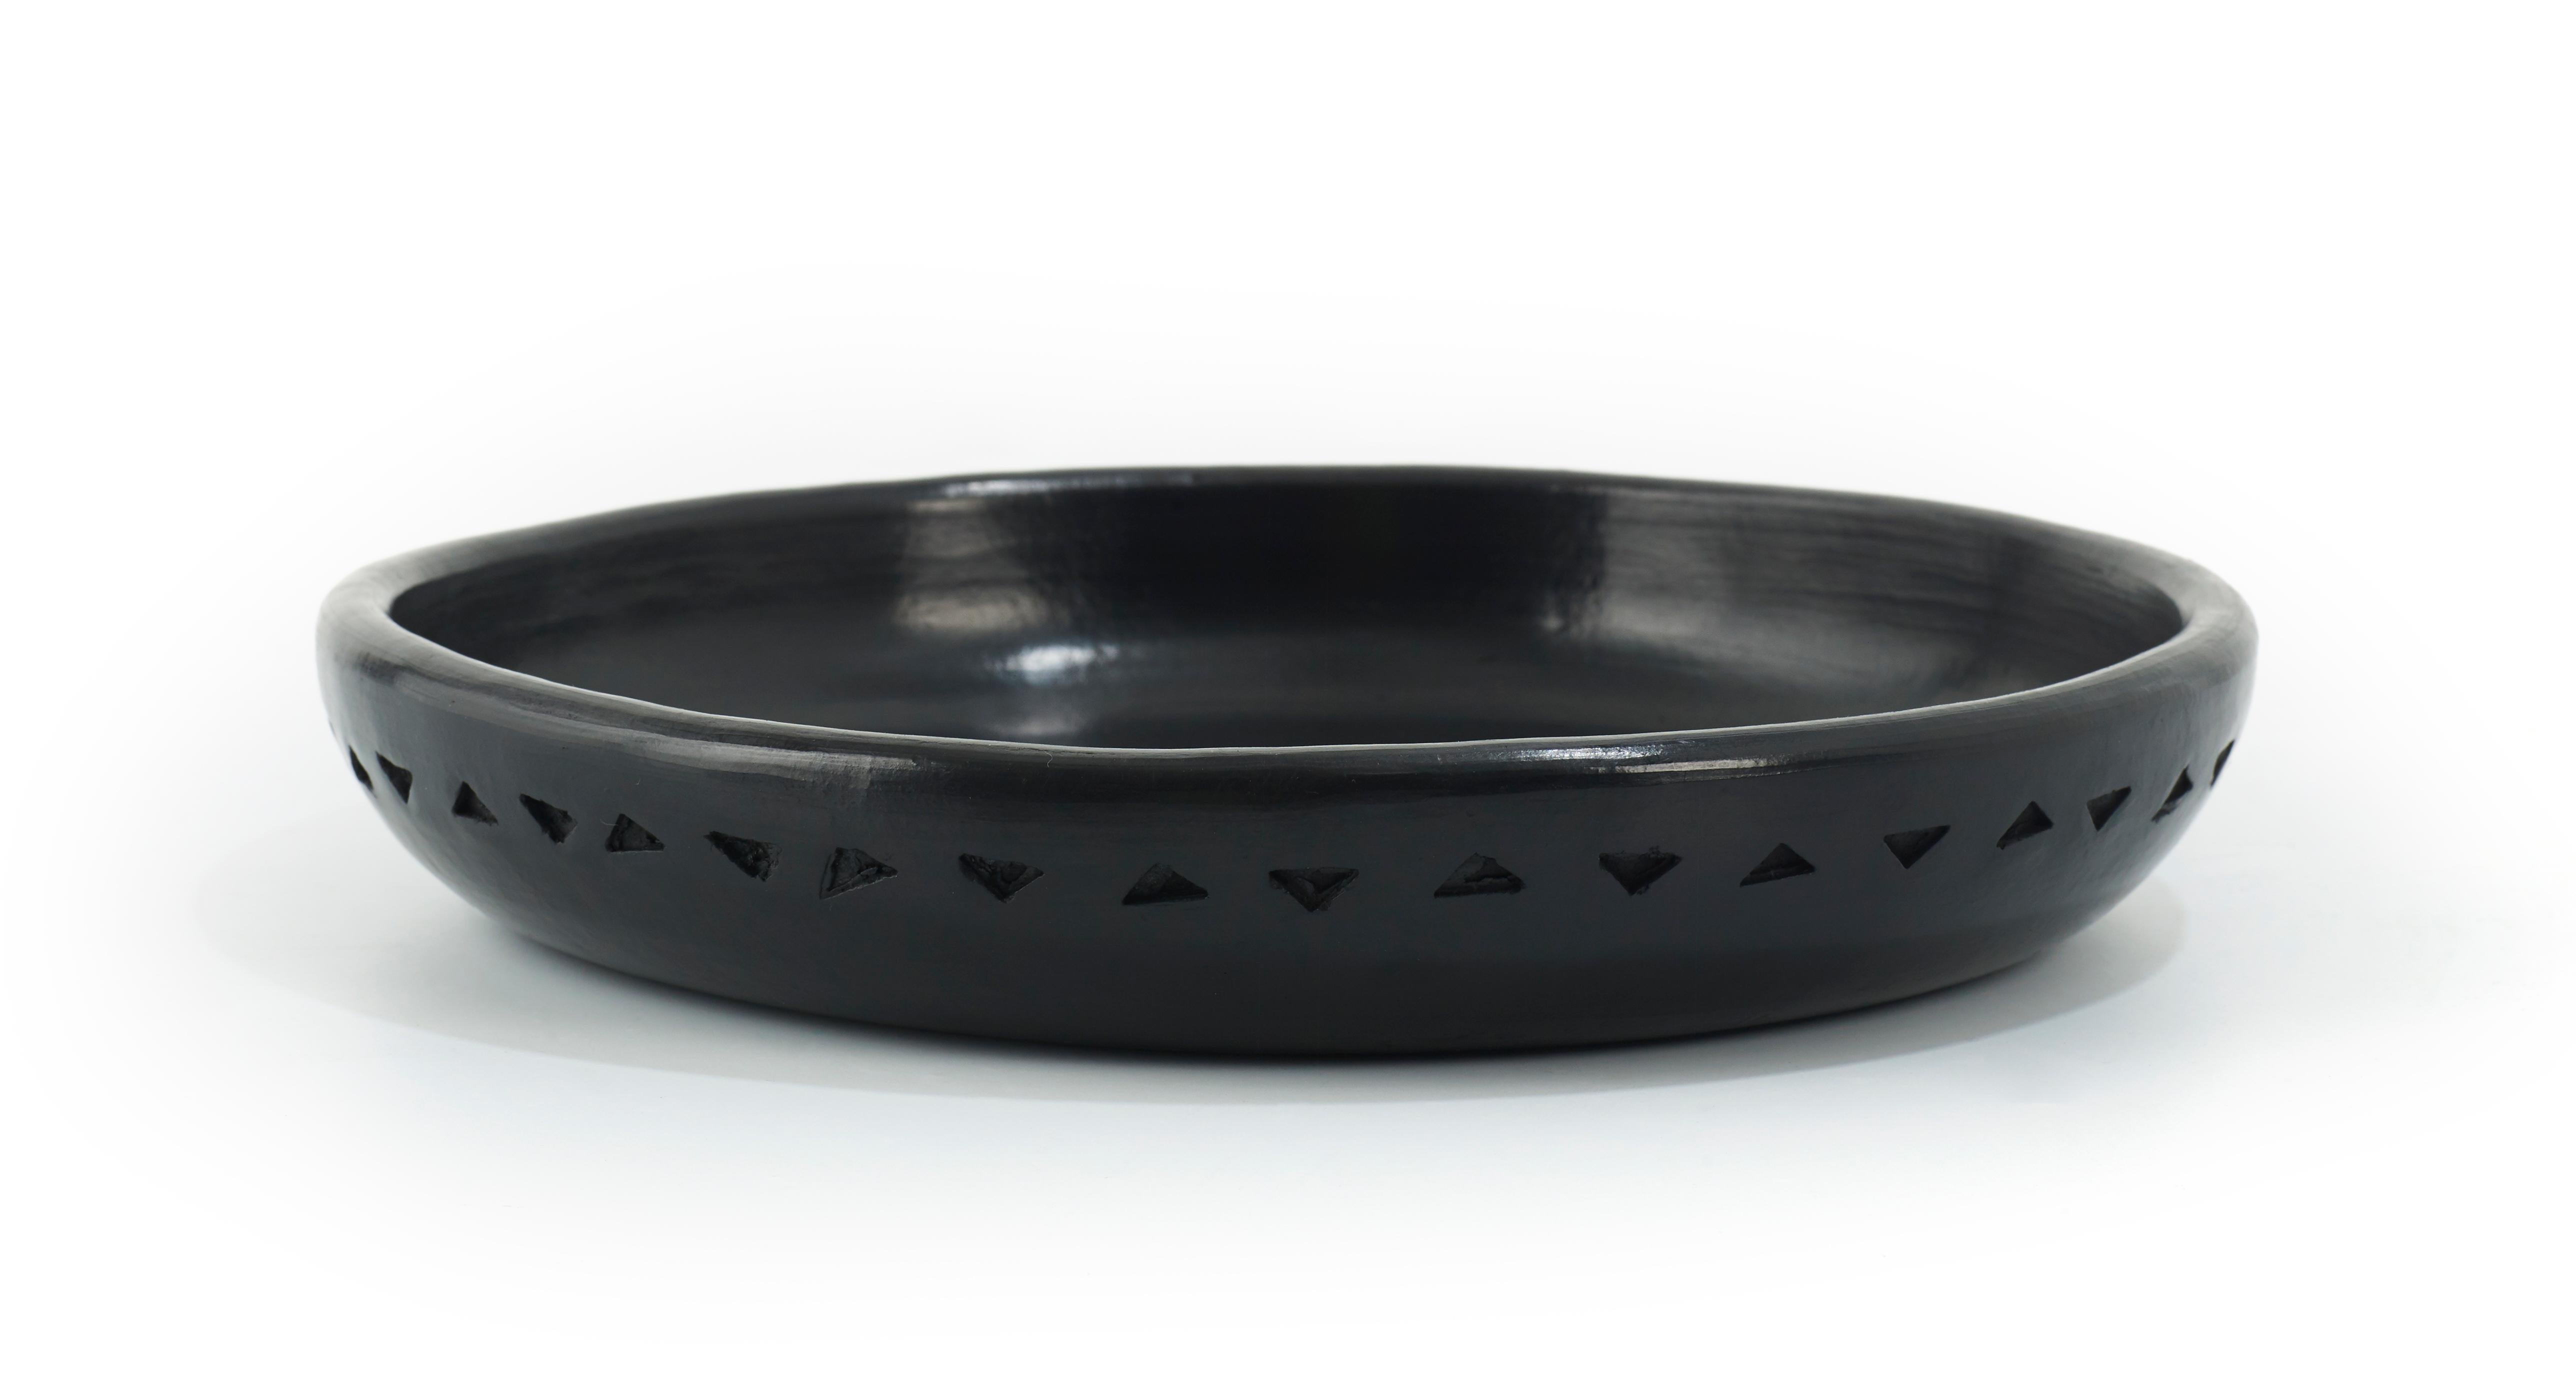 Teller 4 schale barro dining von Sebastian Herkner
MATERIALIEN: Hitzebeständige schwarze Keramik. 
Technik: Glasiert. Im Ofen gegart und mit Halbedelsteinen poliert. 
Abmessungen: Durchmesser 26 cm x Höhe 4 cm 
Auch in anderen Größen